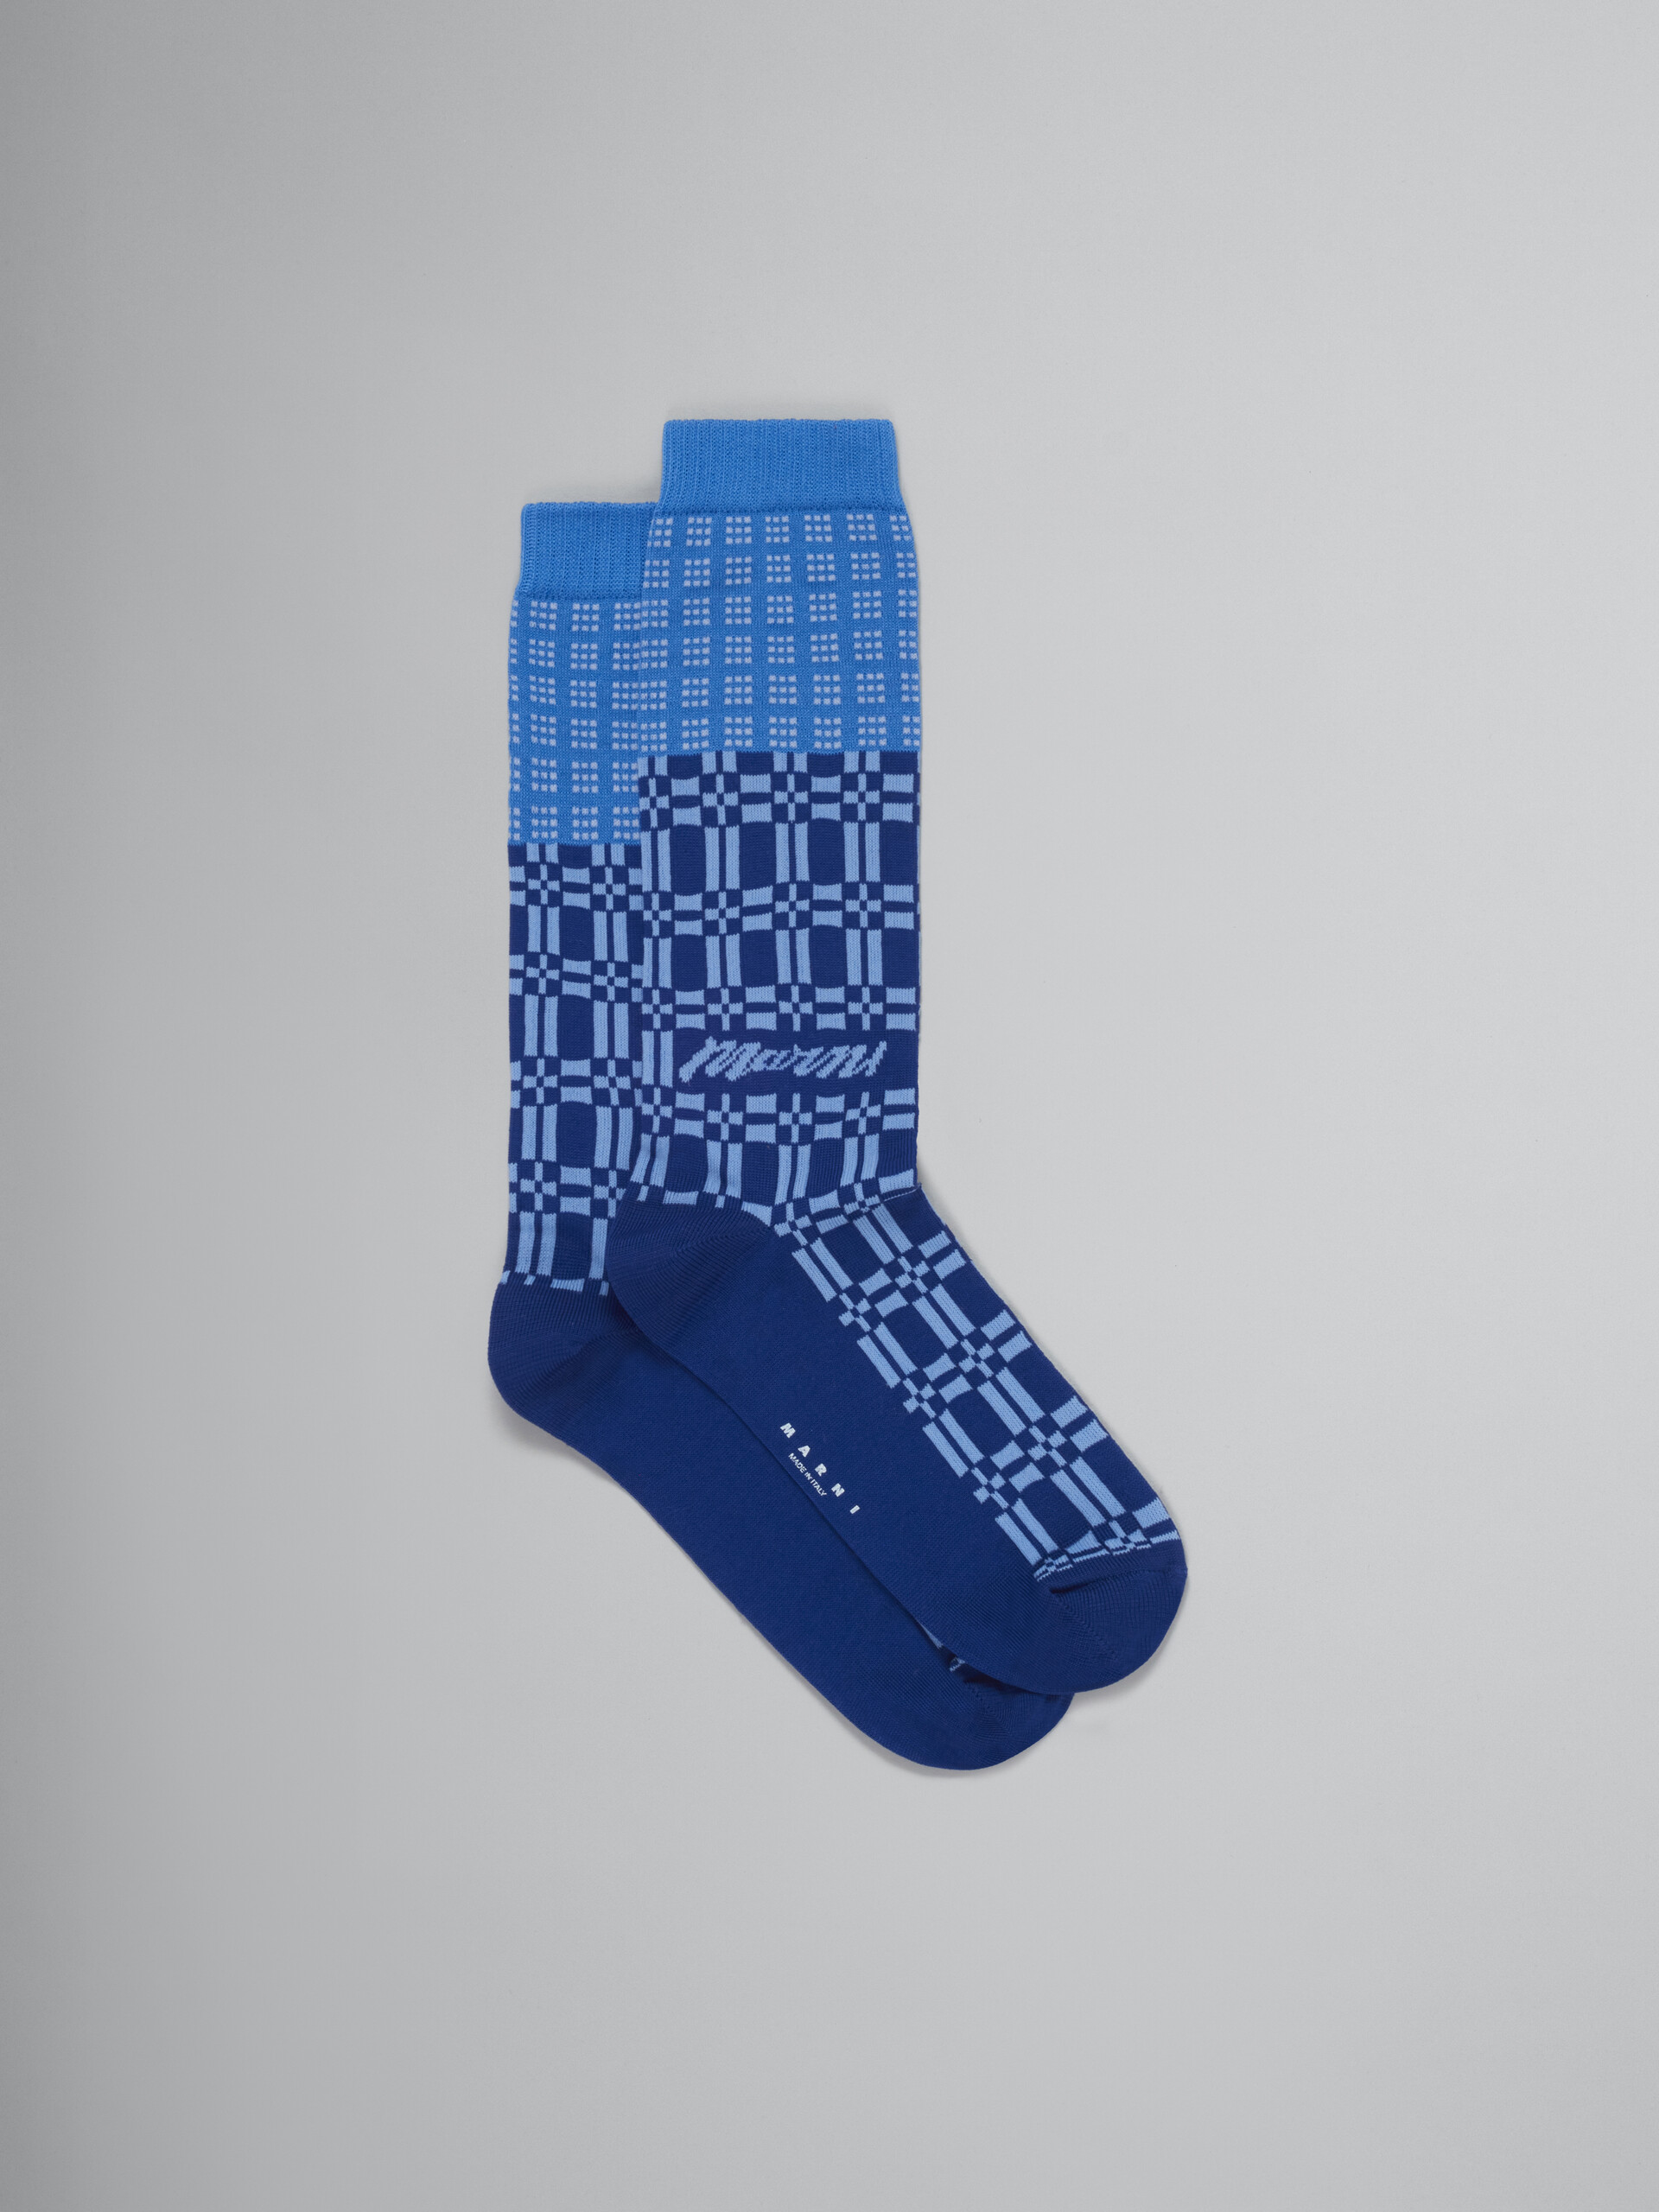 Marni Man's Geometric Patterns Socks